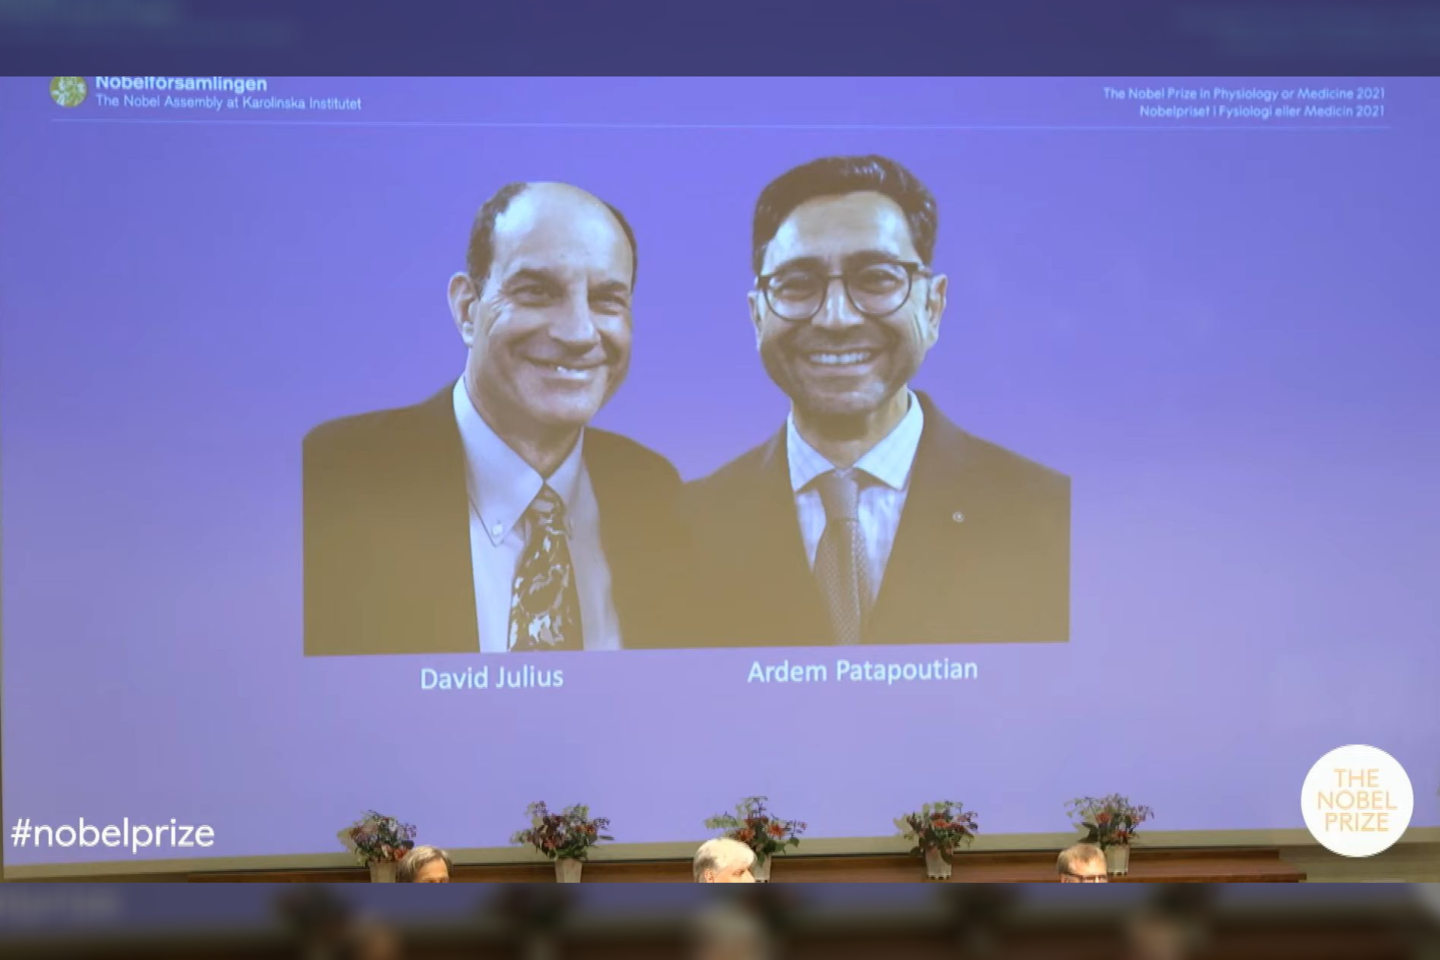  Švedijos Karolinskos instituto Nobelio komisija šiemet apdovanojimą skyrė Davidui Julius'ui ir Arendui Patapoutinanui, už temeperatūros ir prisilietimo receptorių atradimus.<br> Transliacijos sopkadras